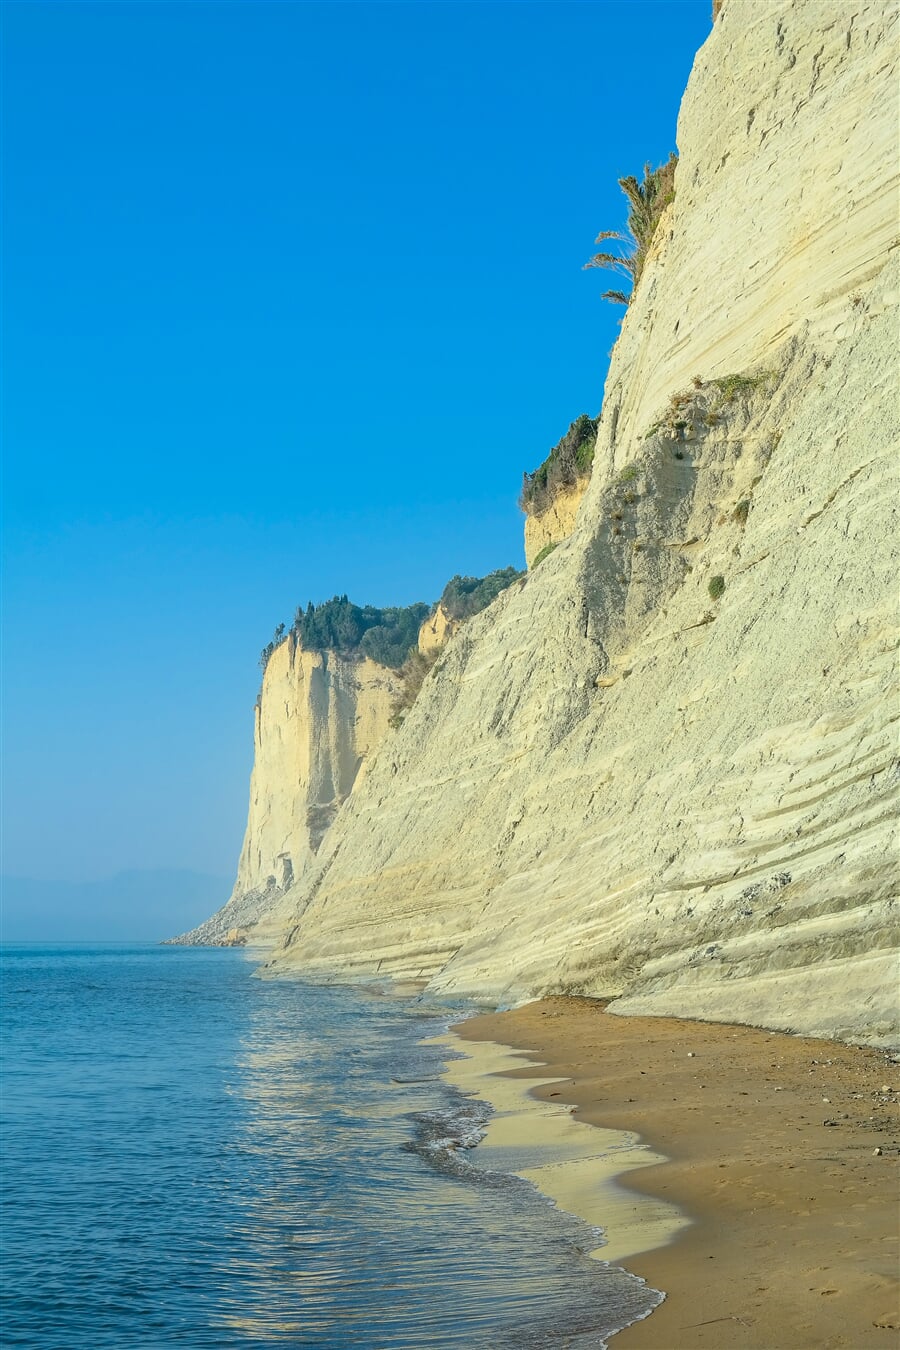 Skaliska a pláže Korfu jsou pověstné